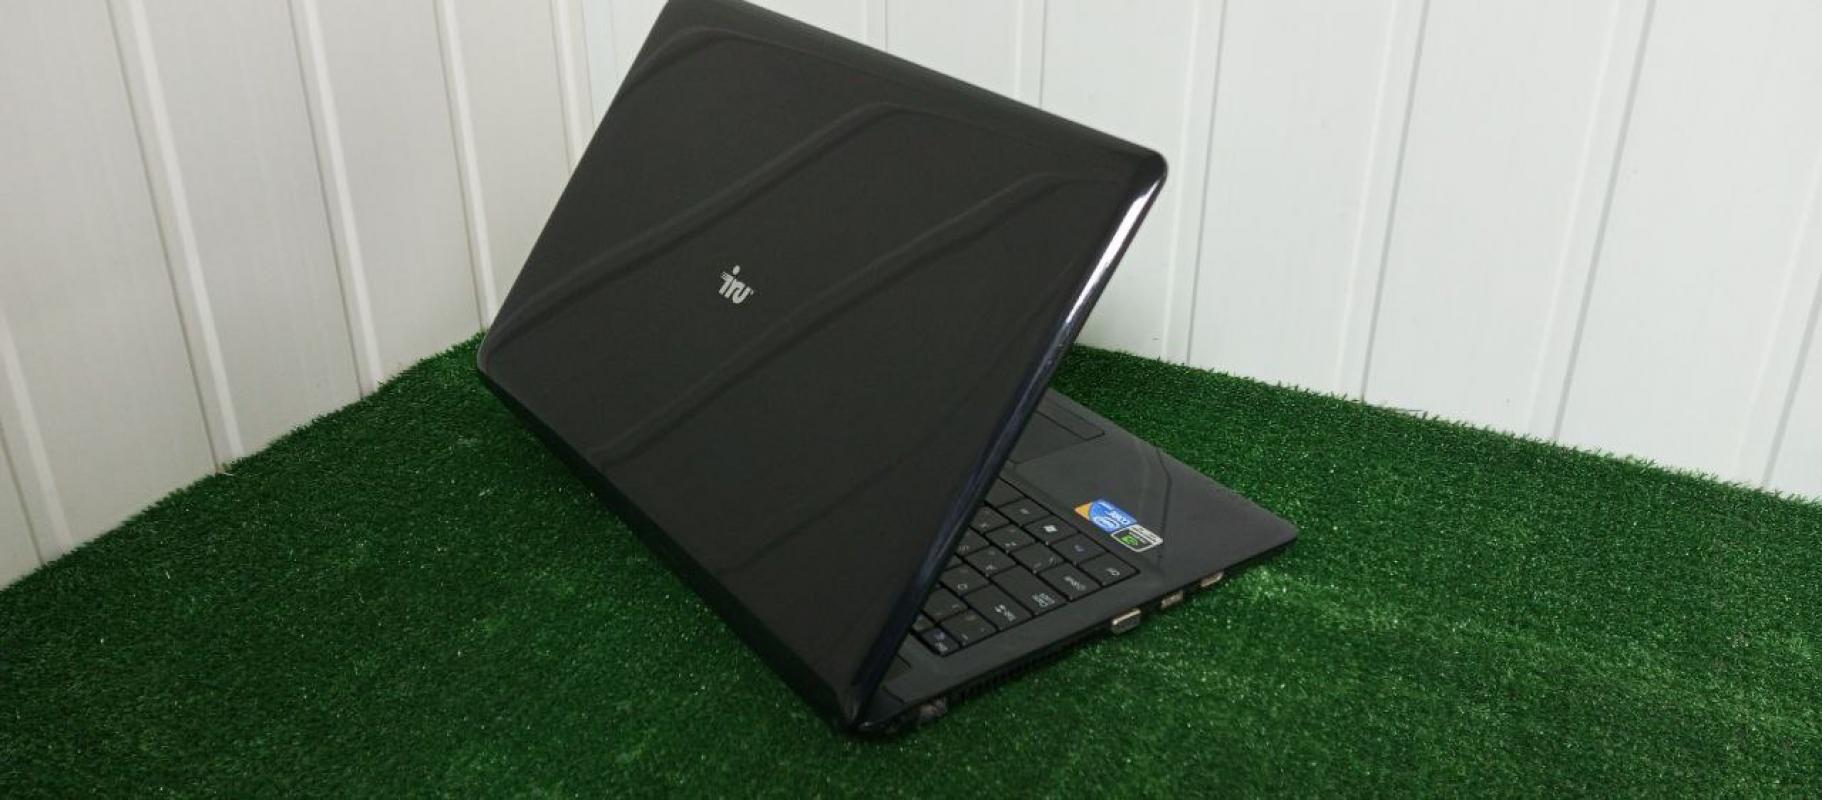 Ноутбук IRU в отличном состоянии разрешение экрана HUHD, 15,5 дюйм.
характеристики:
Процессор Intel - 